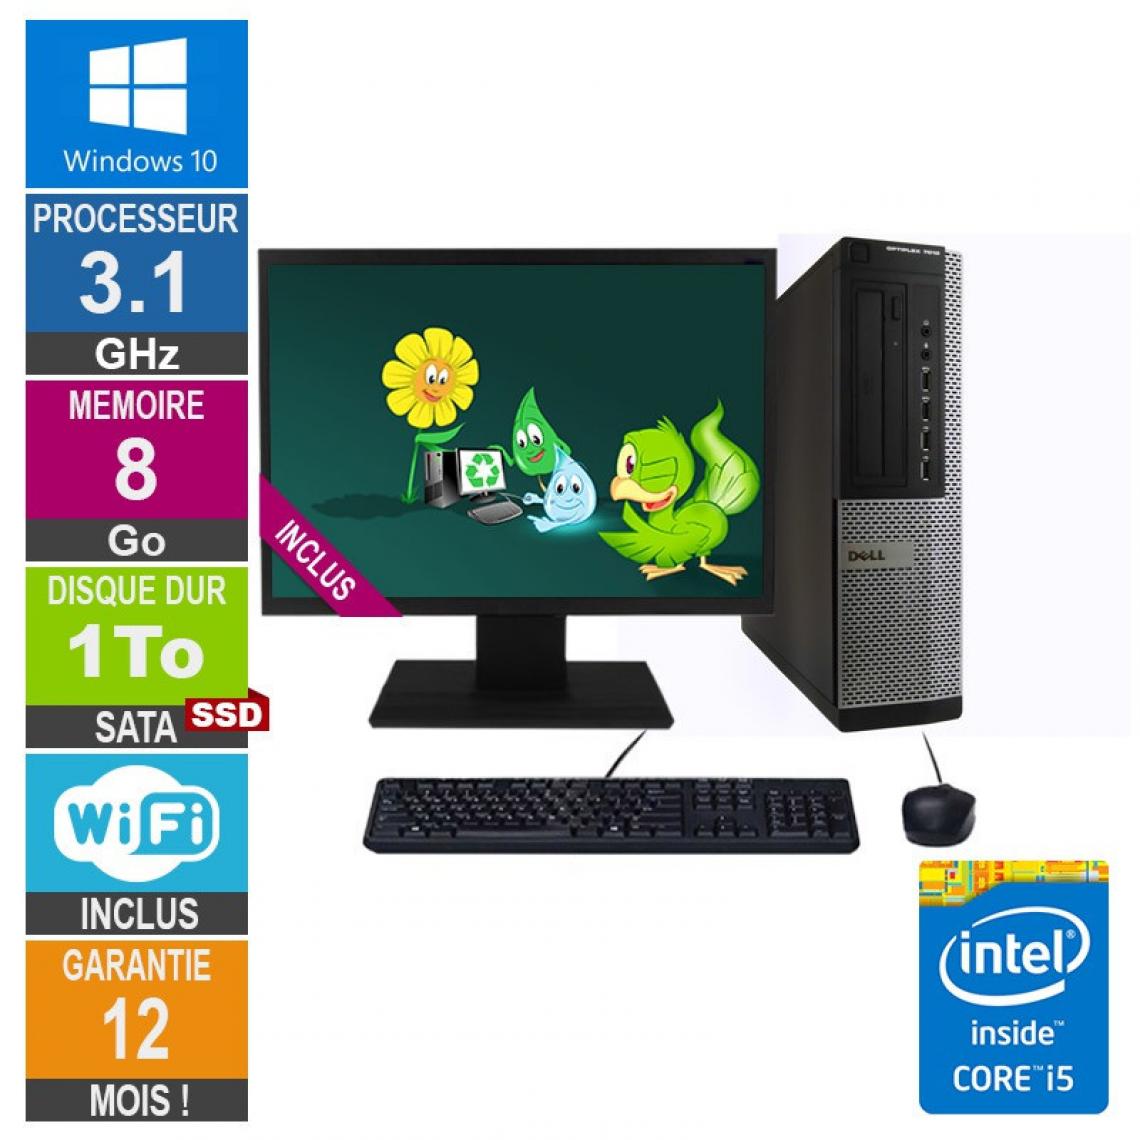 Dell - PC Dell Optiplex 7010 DT Core i5-2400 3.10GHz 8Go/1To SSD Wifi W10 + Ecran 19 - PC Fixe